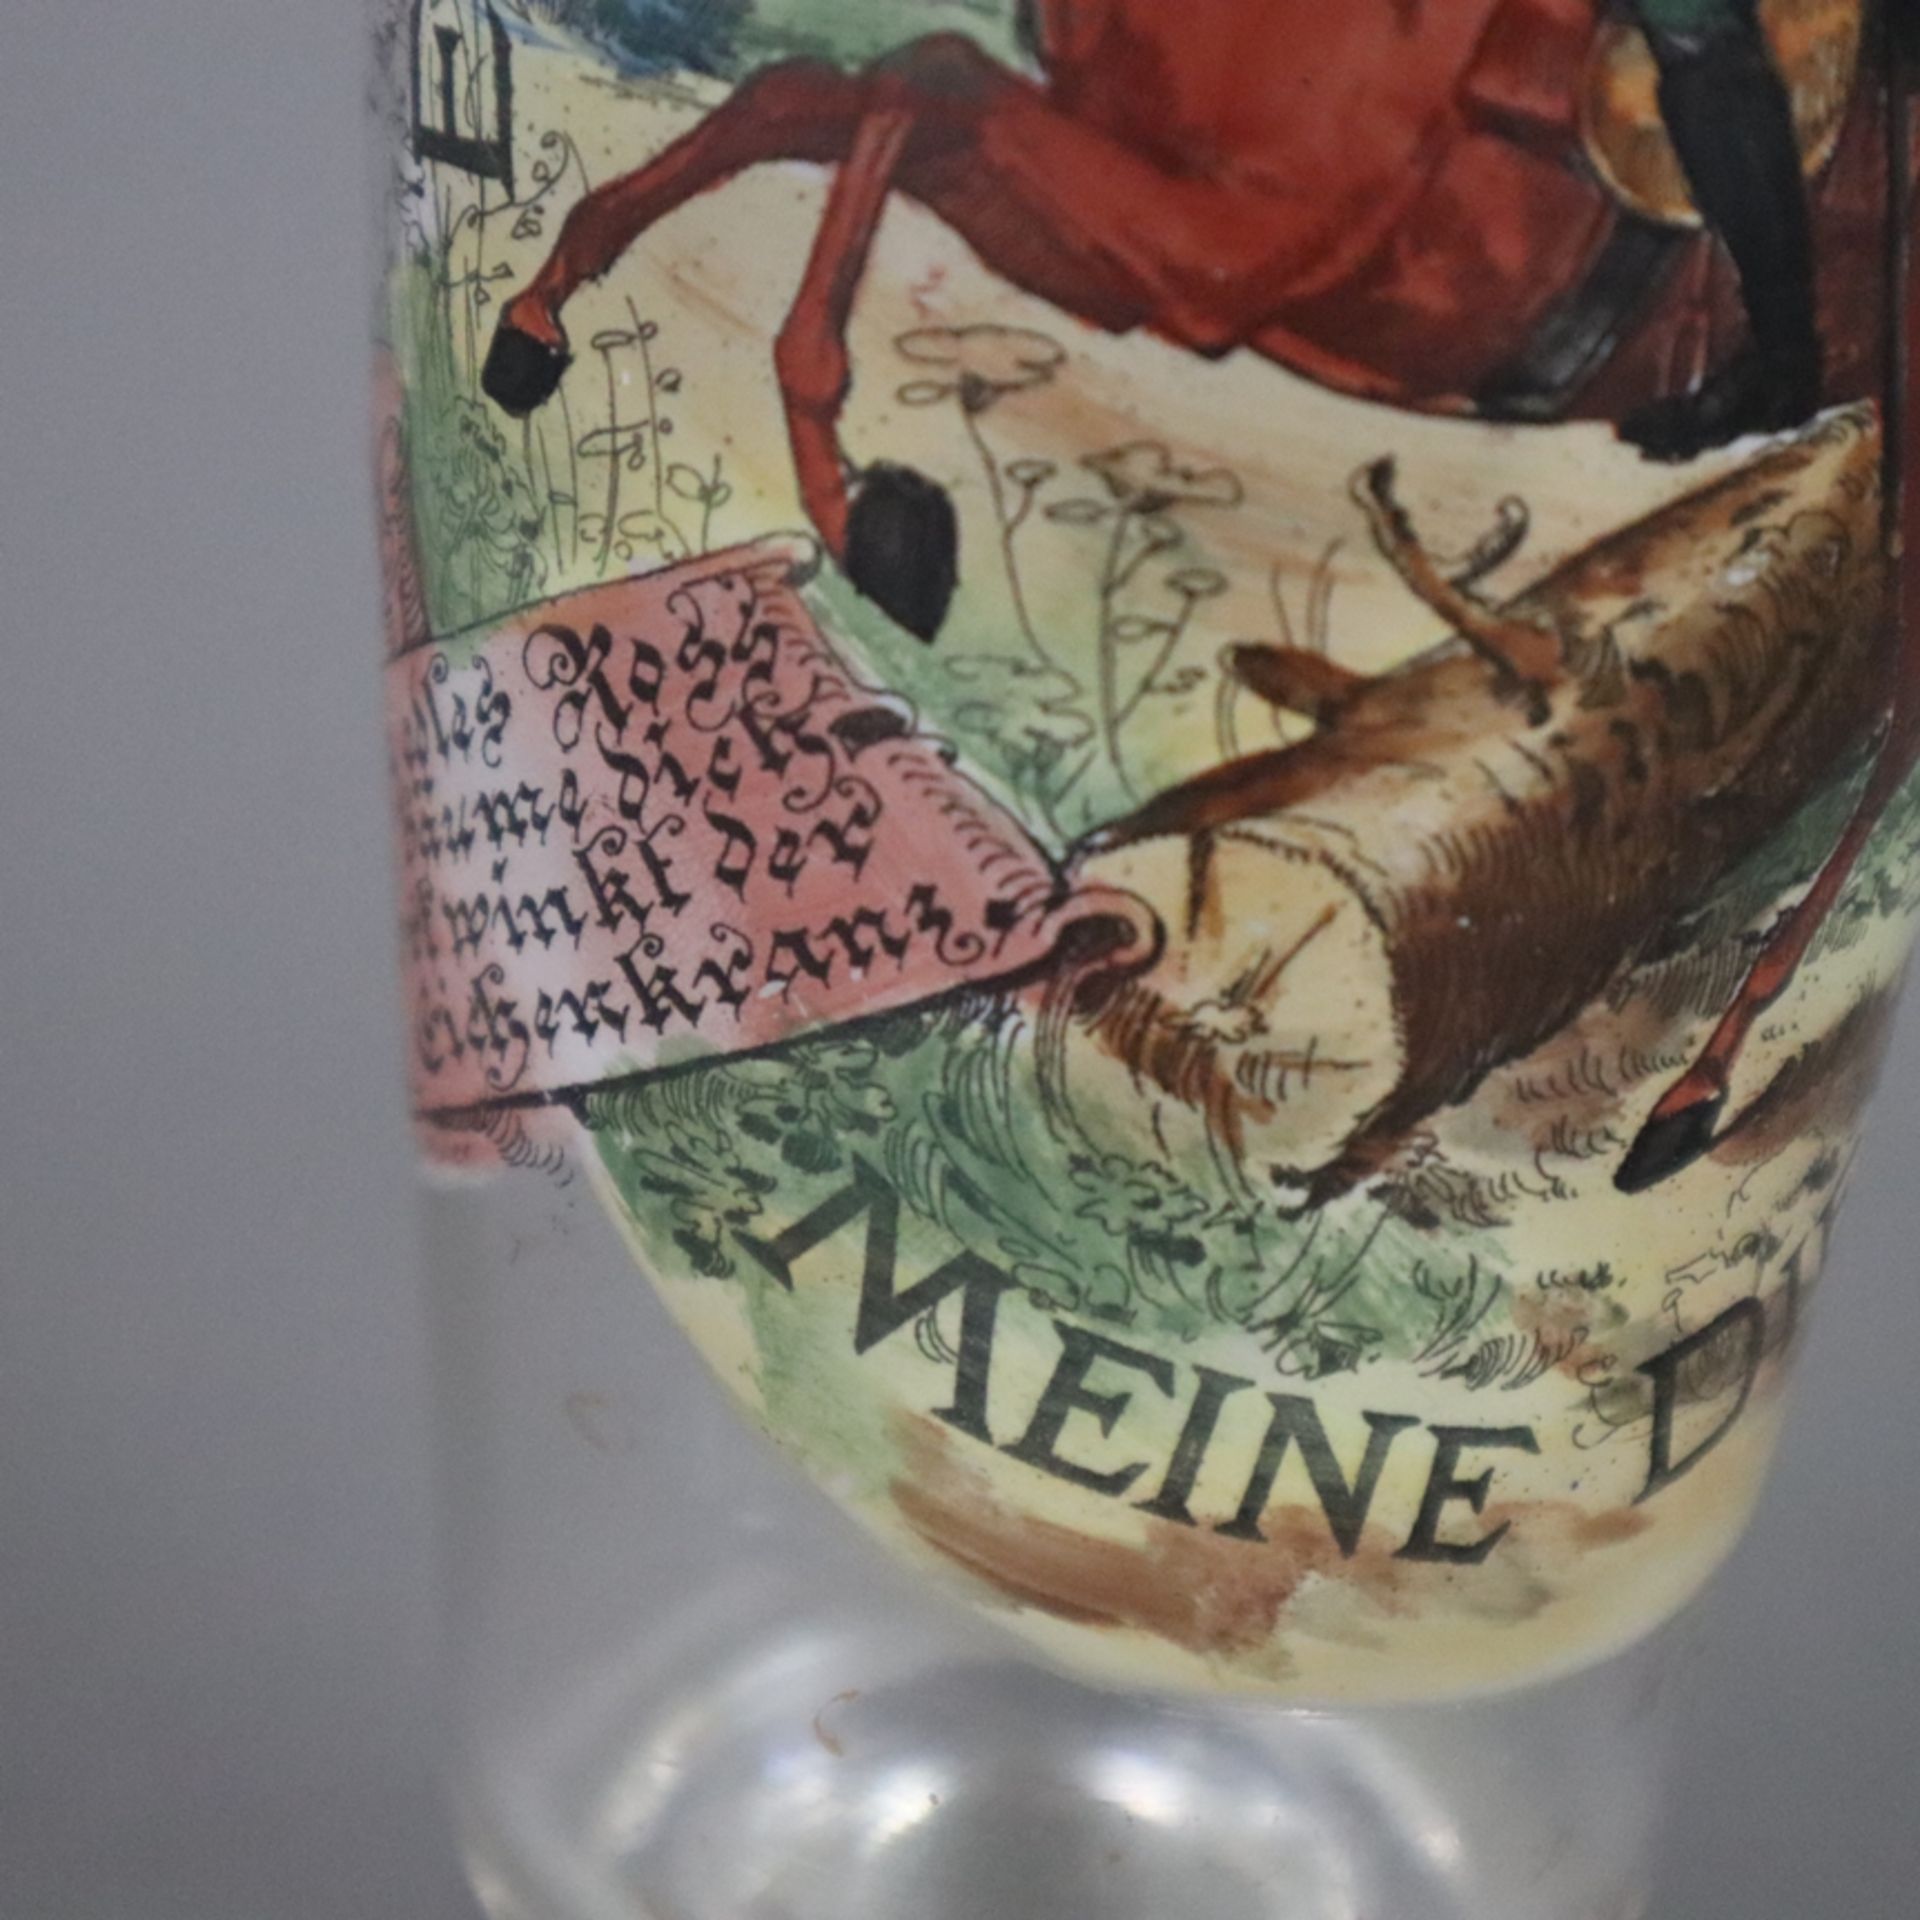 Erinnerungsglas - "Erinnerung an meine Dienstzeit", Klarglas, schauseitig mit polychromem Dekor, da - Image 3 of 8